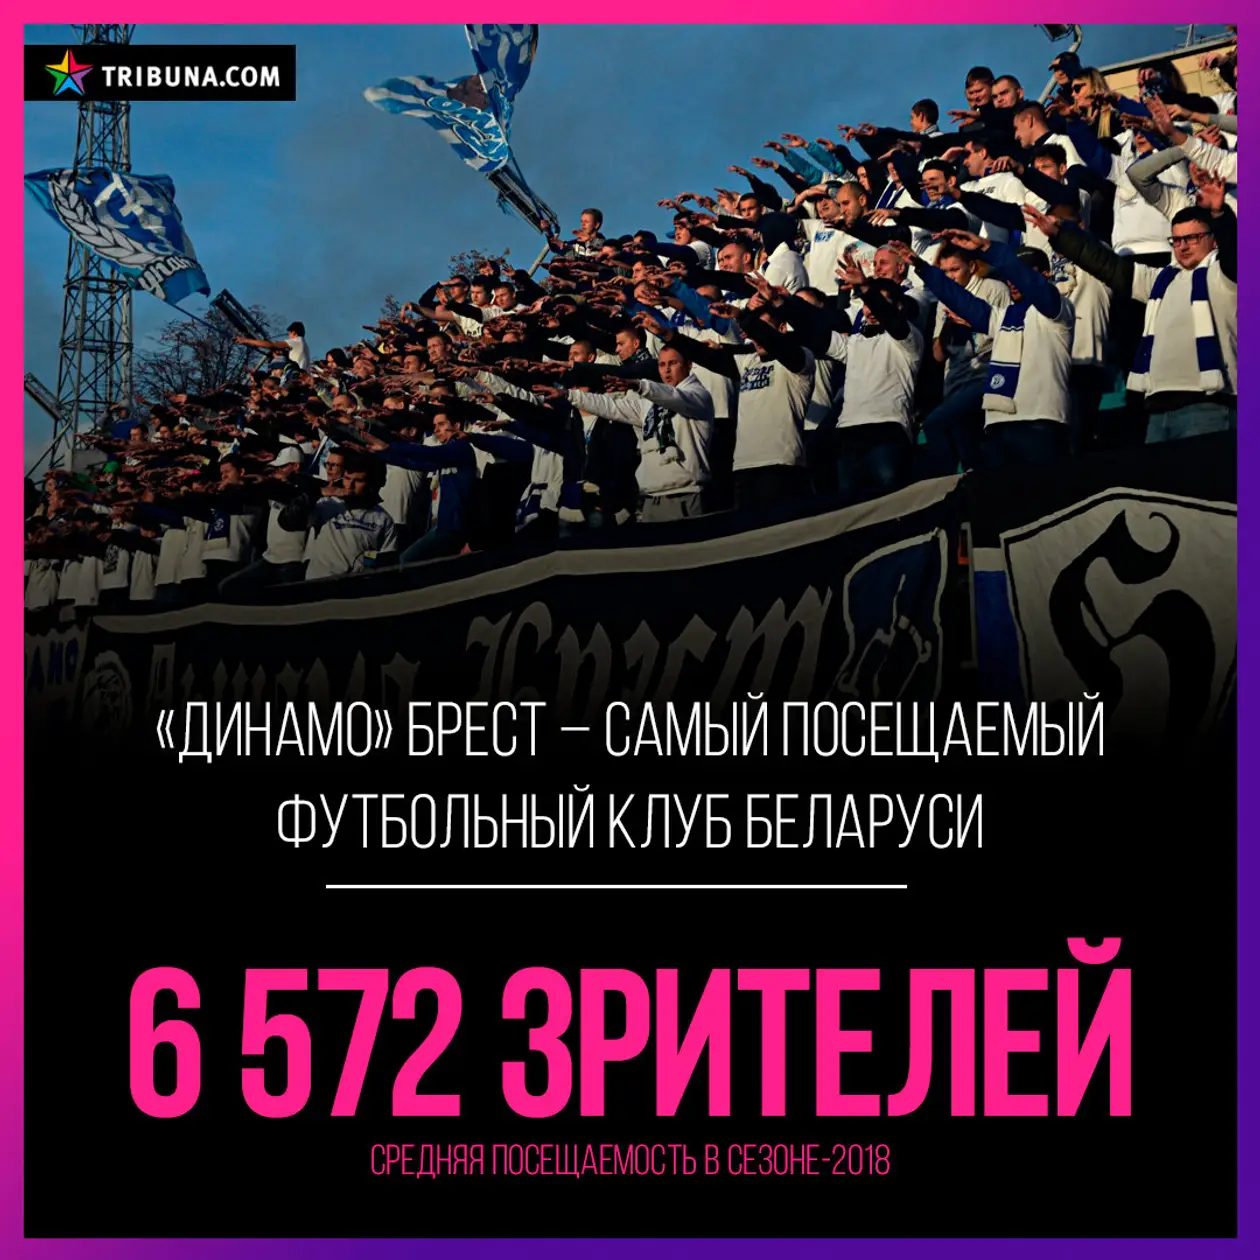 Лучше всего на стадион ходят в Бресте, но Борисов и Городея в среднем футбольней